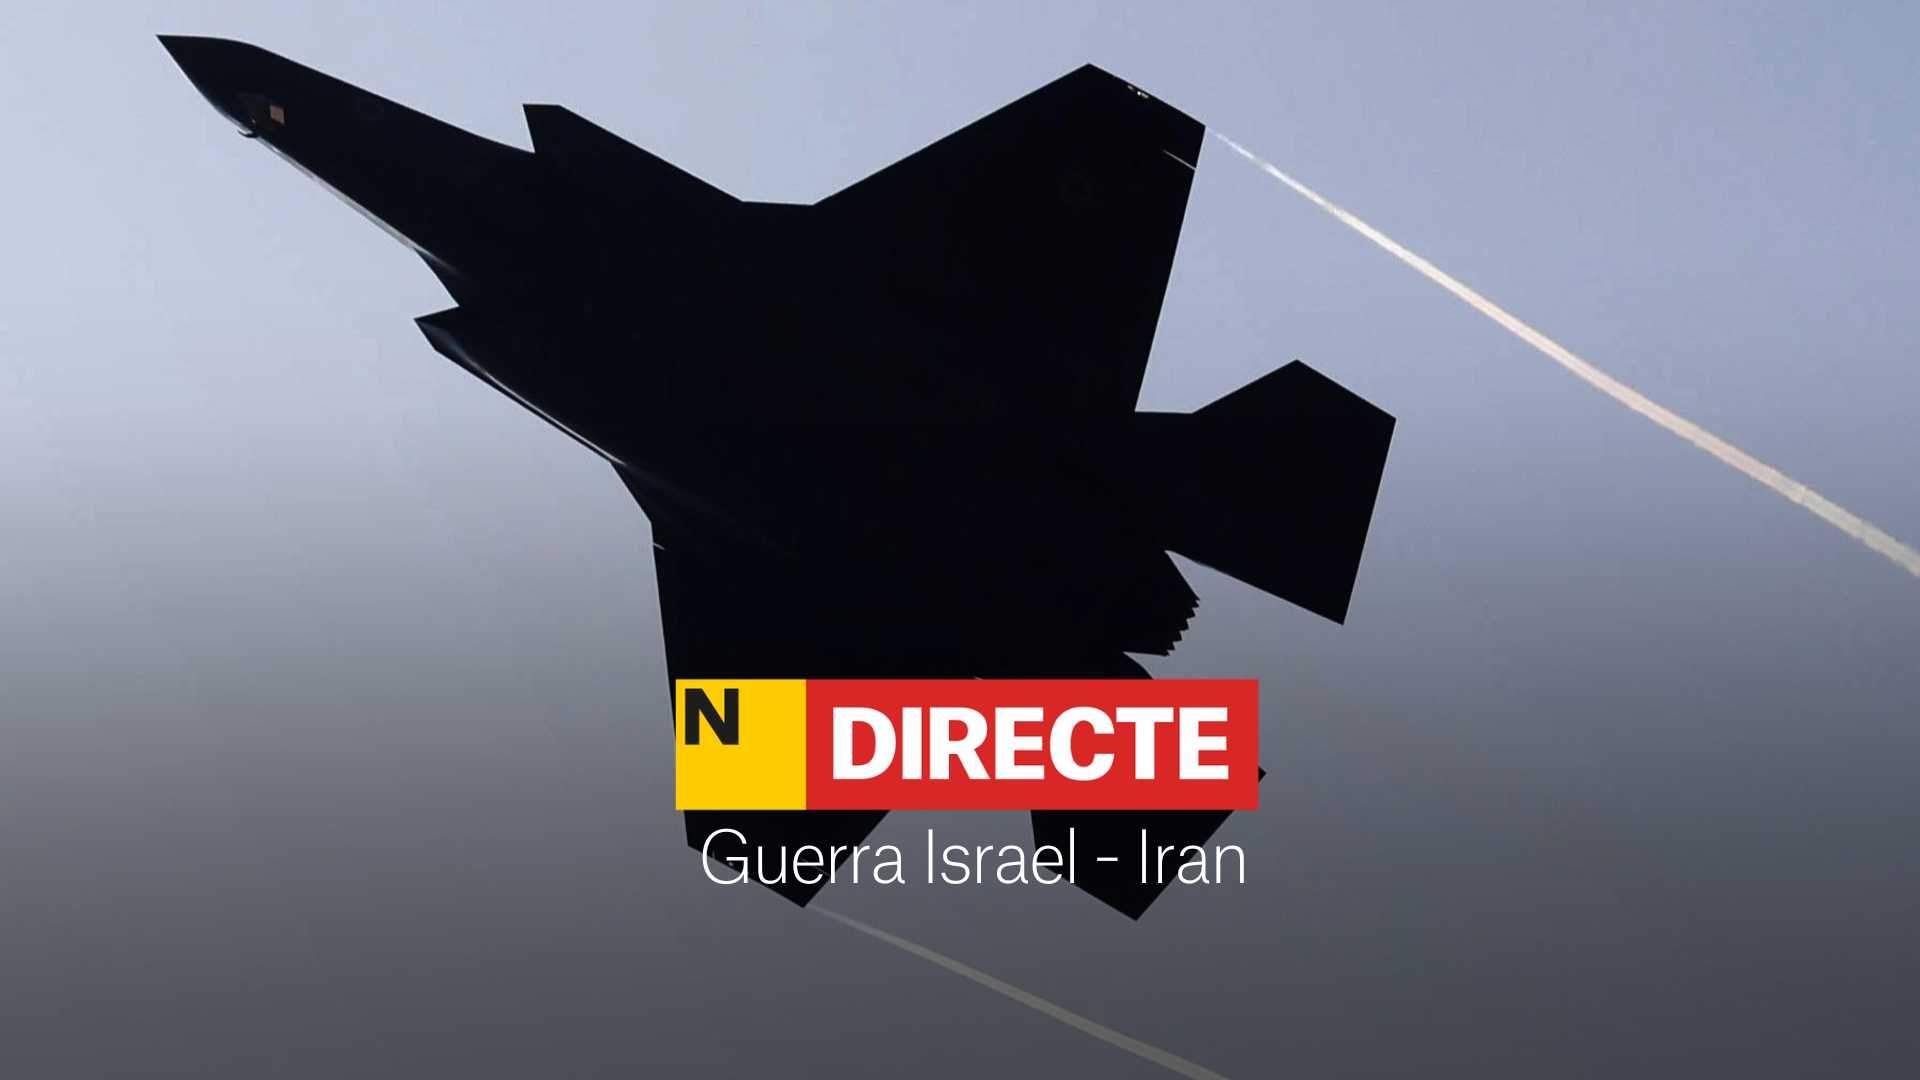 Ataque de Israel a Irán hoy, DIRECTO | Última hora del conflicto en el Oriente Medio